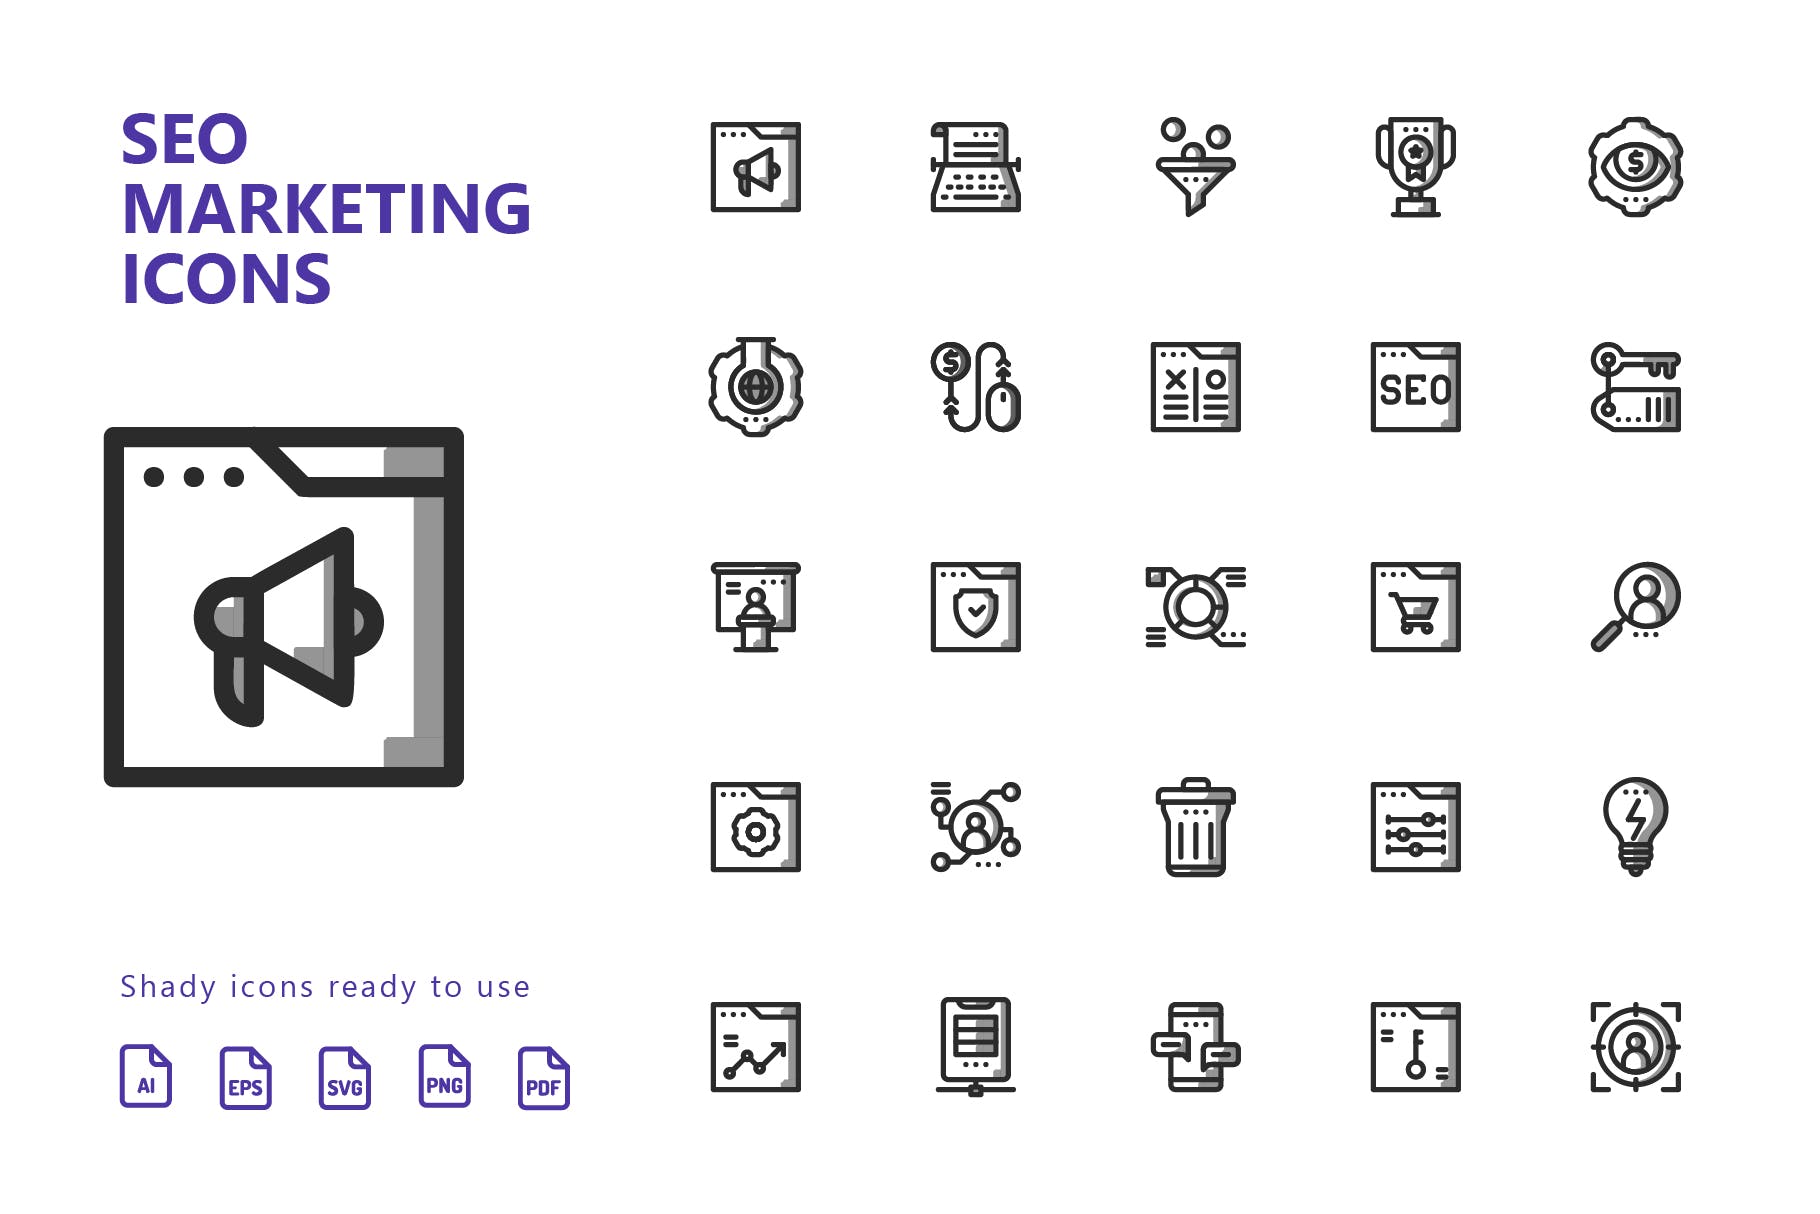 25枚SEO搜索引擎优化营销矢量阴影第一素材精选图标v2 SEO Marketing Shady Icons插图(1)